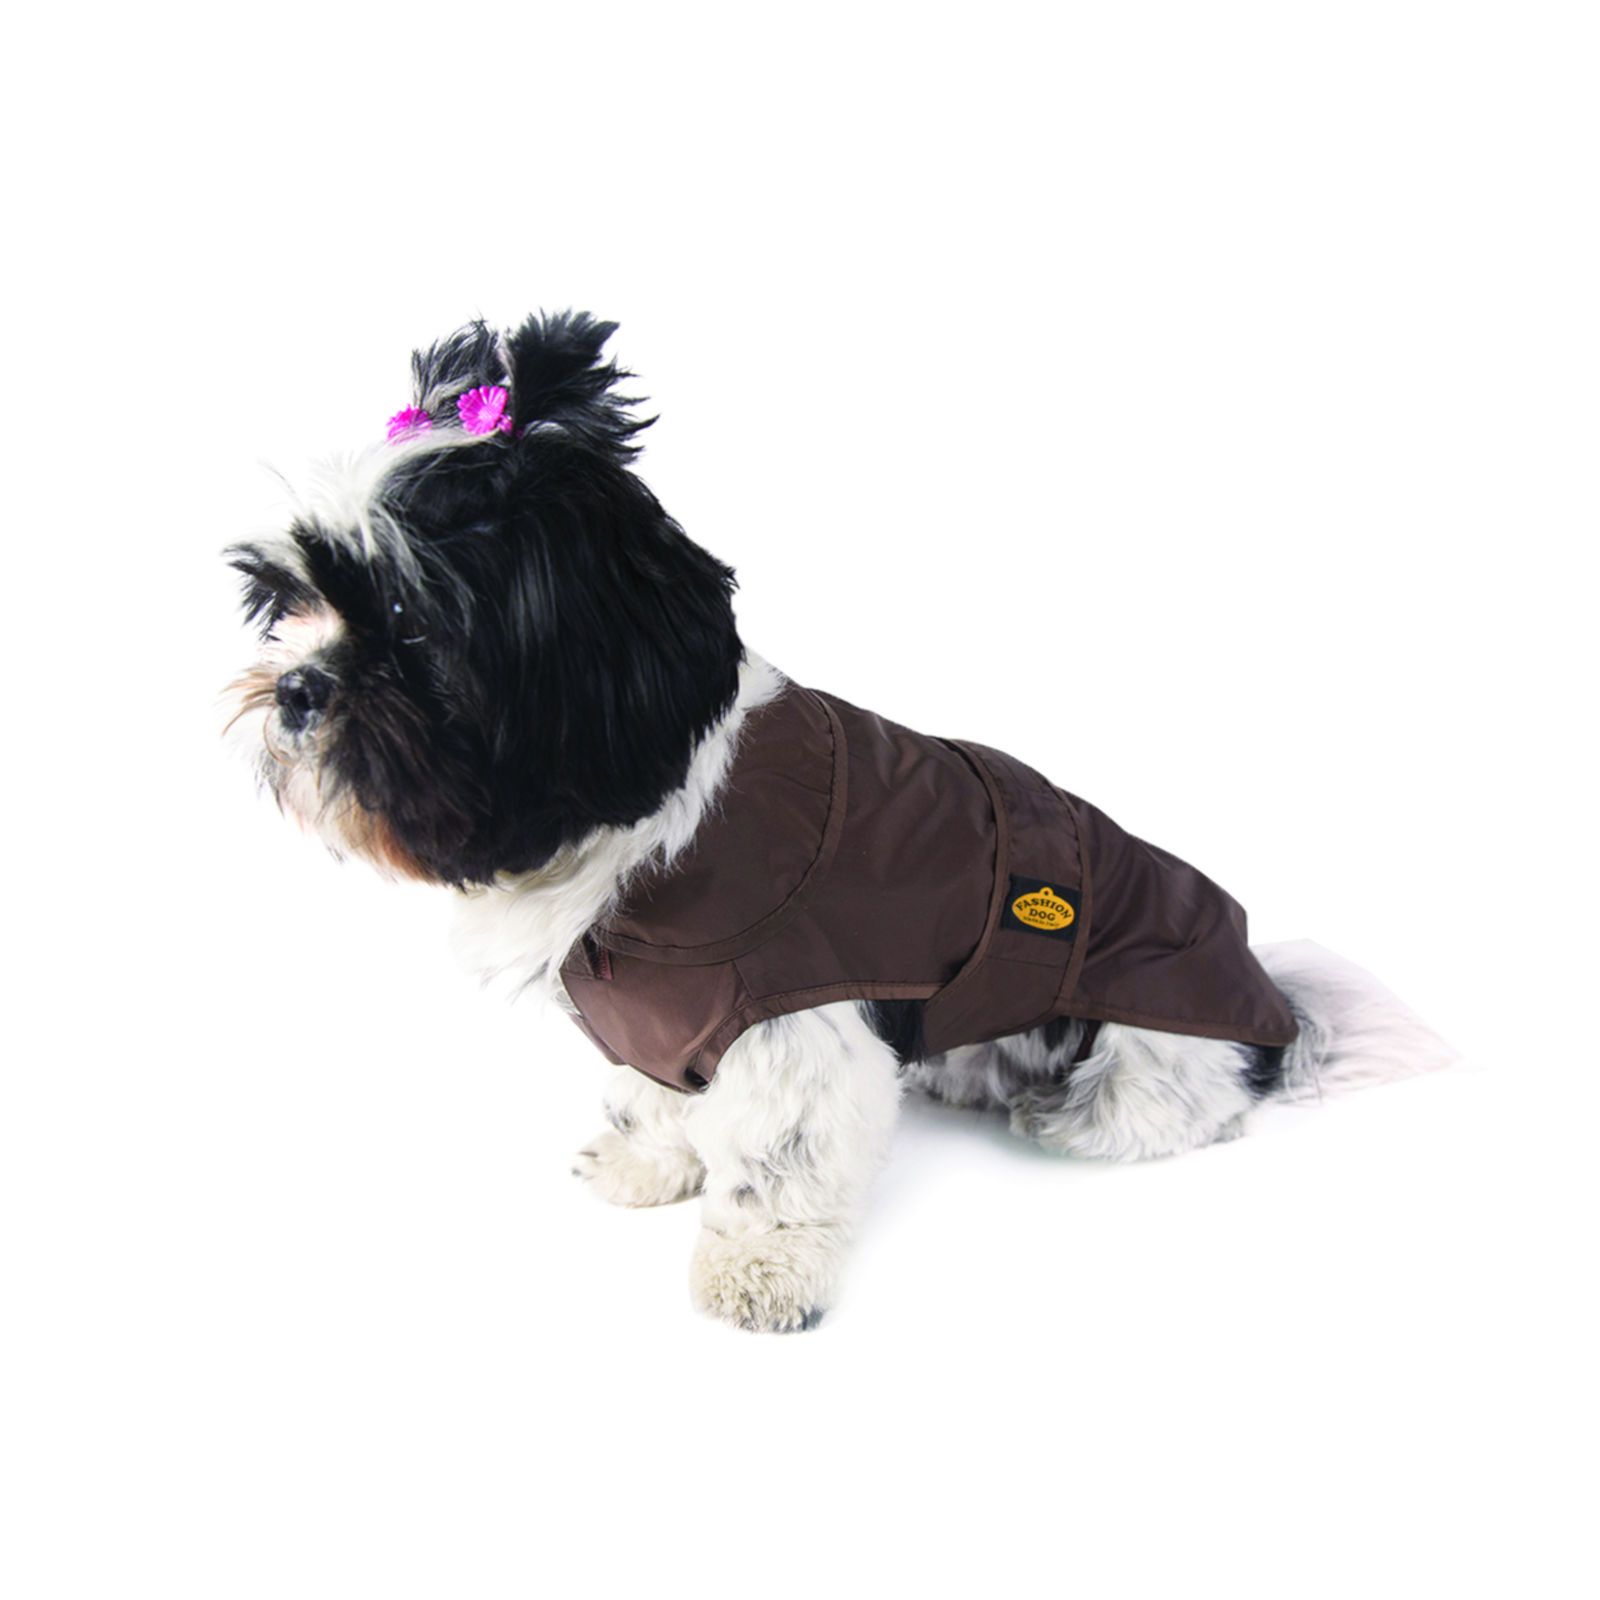 Fashion Dog Regenmantel für Hunde - Braun - 39 cm